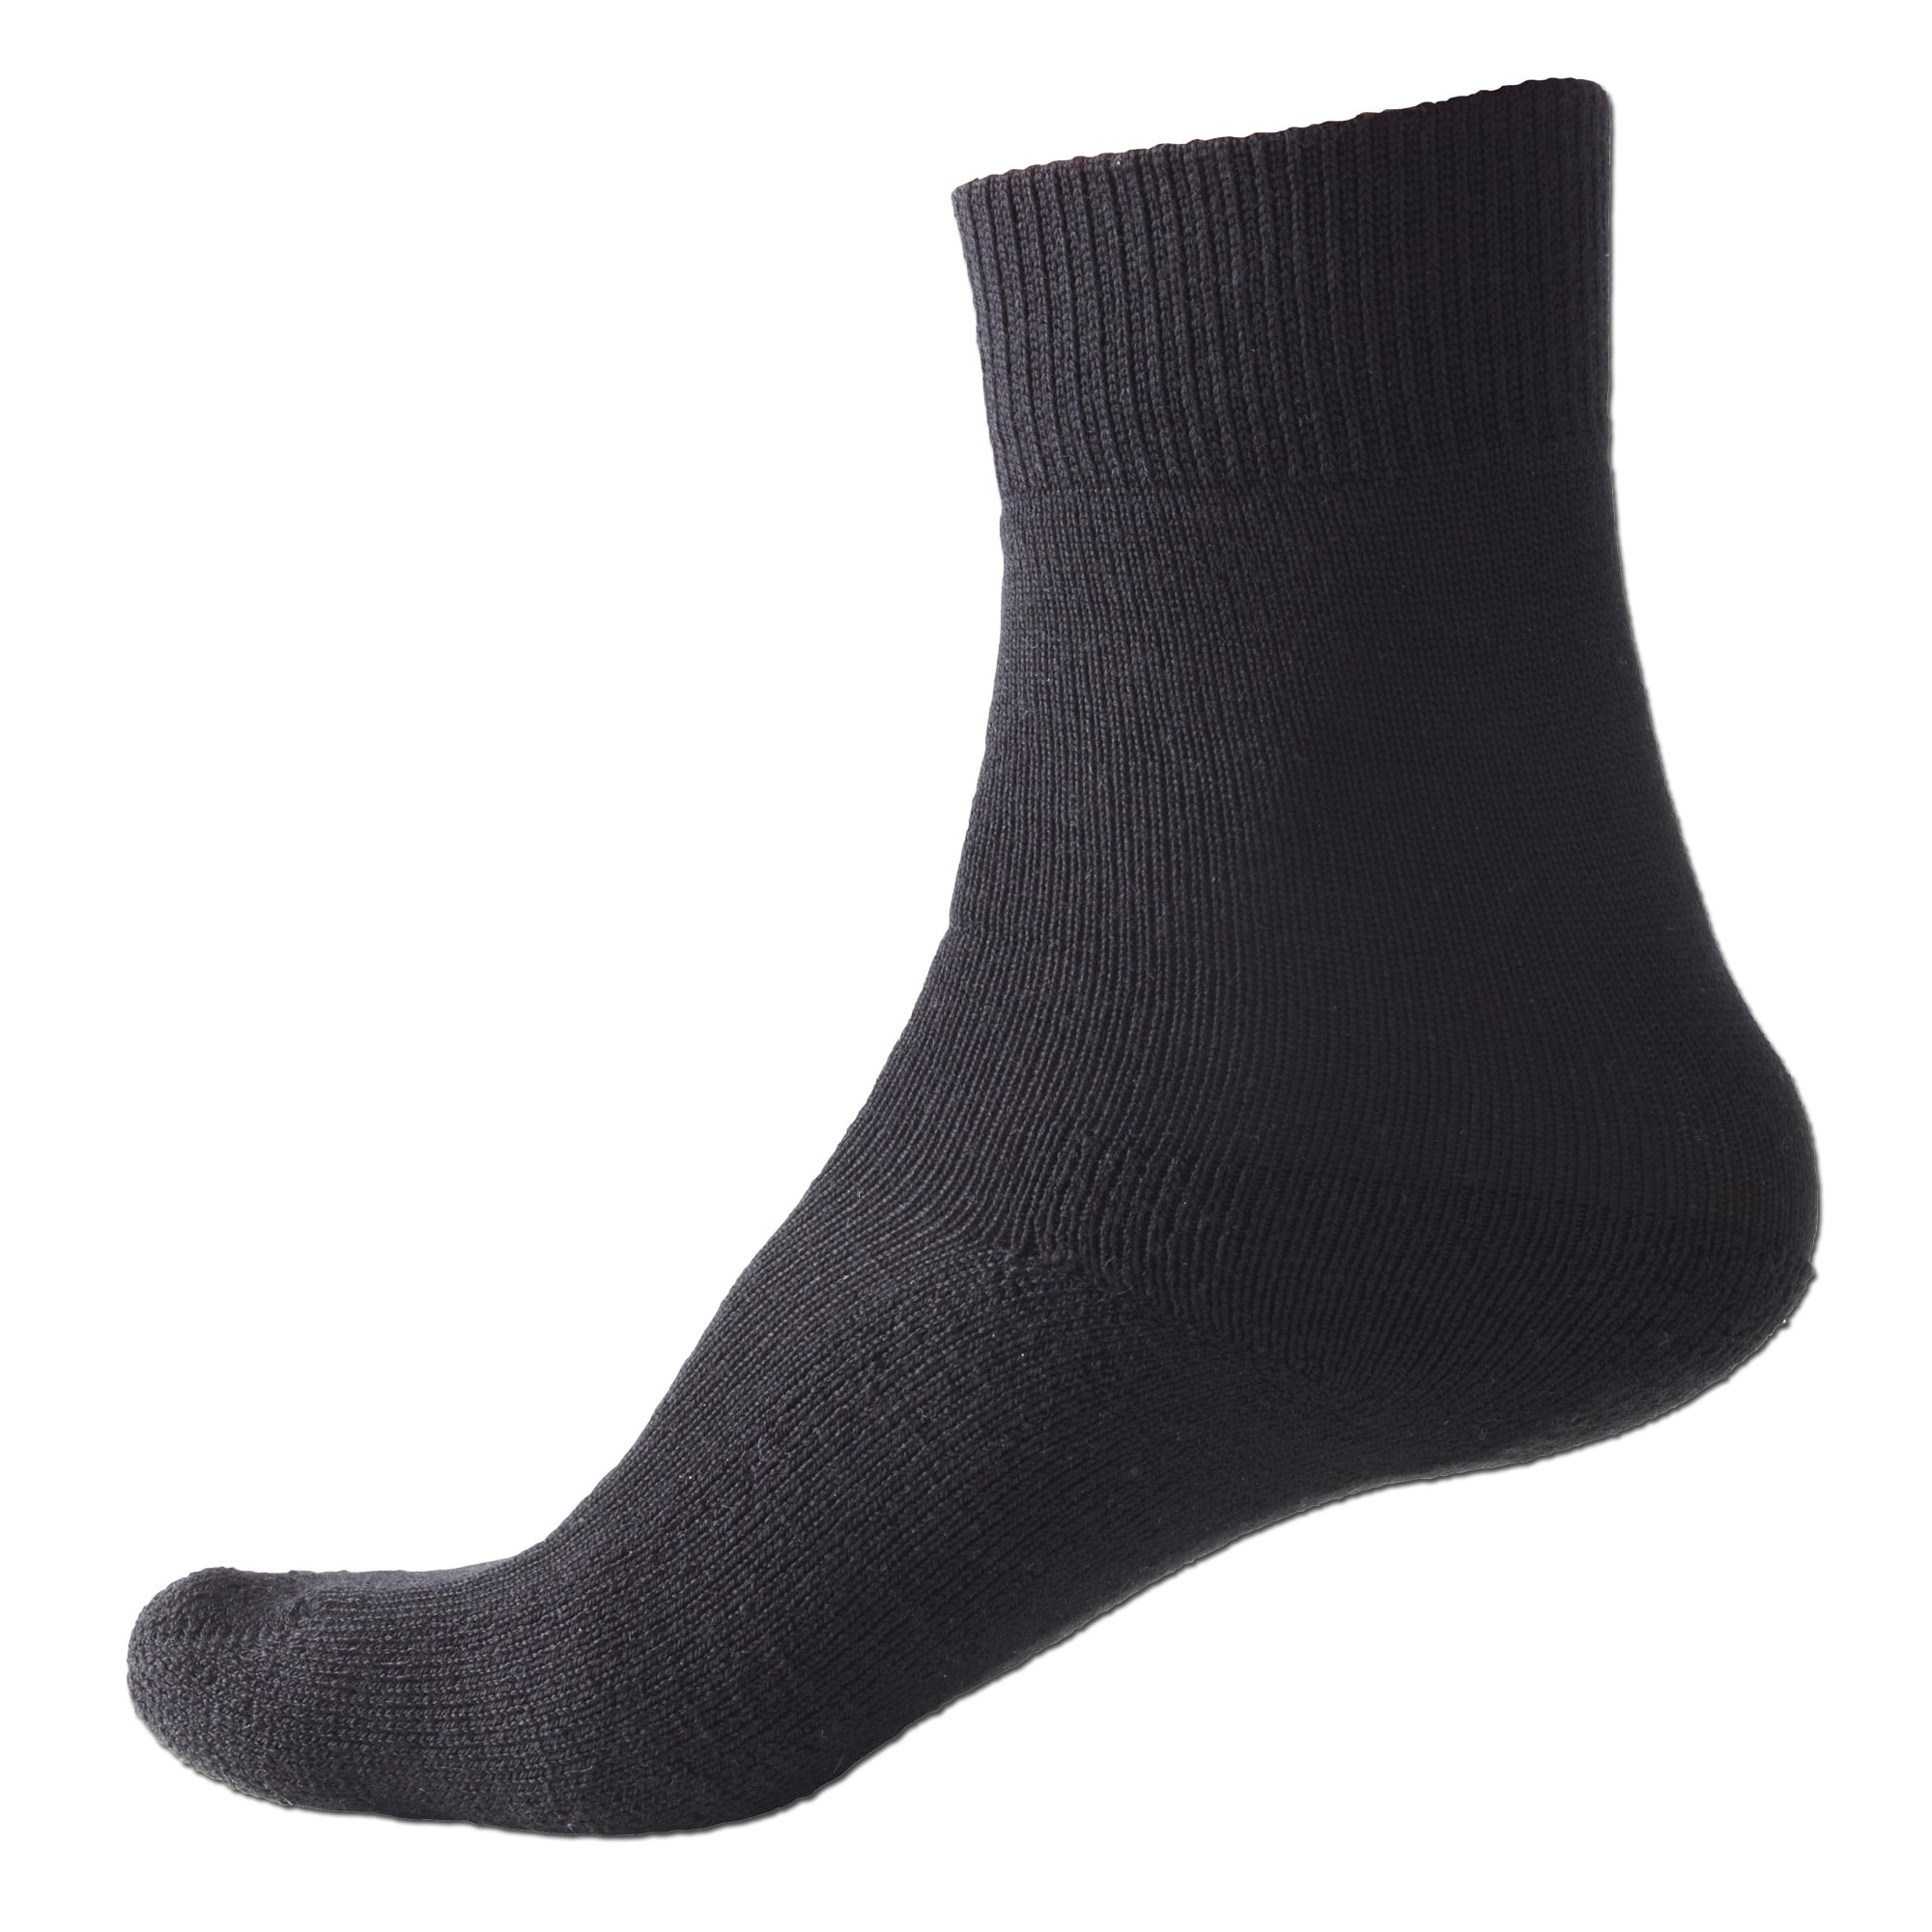 Sealskinz Socks Thermal Liner black | Sealskinz Socks Thermal Liner ...